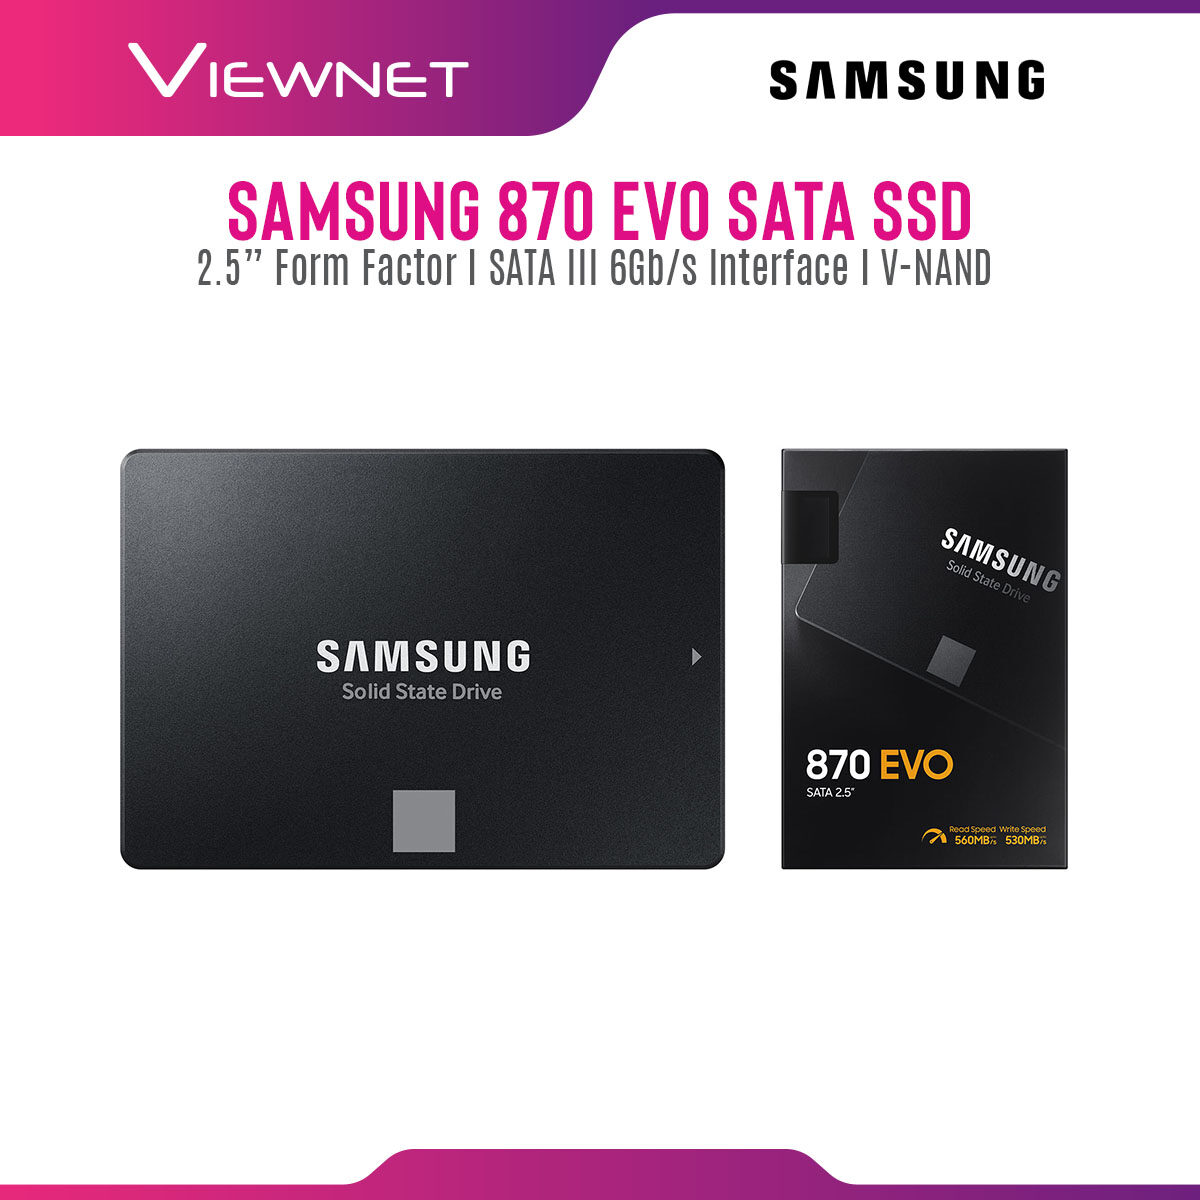 Samsung Internal SSD 860 EVO / 870 EVO SATA III 2.5 inch V-NAND 3 bit MLC Internal Solid State Drive (250GB/500GB/1TB/2TB/4TB) Up to 550MB/s Internal SSD